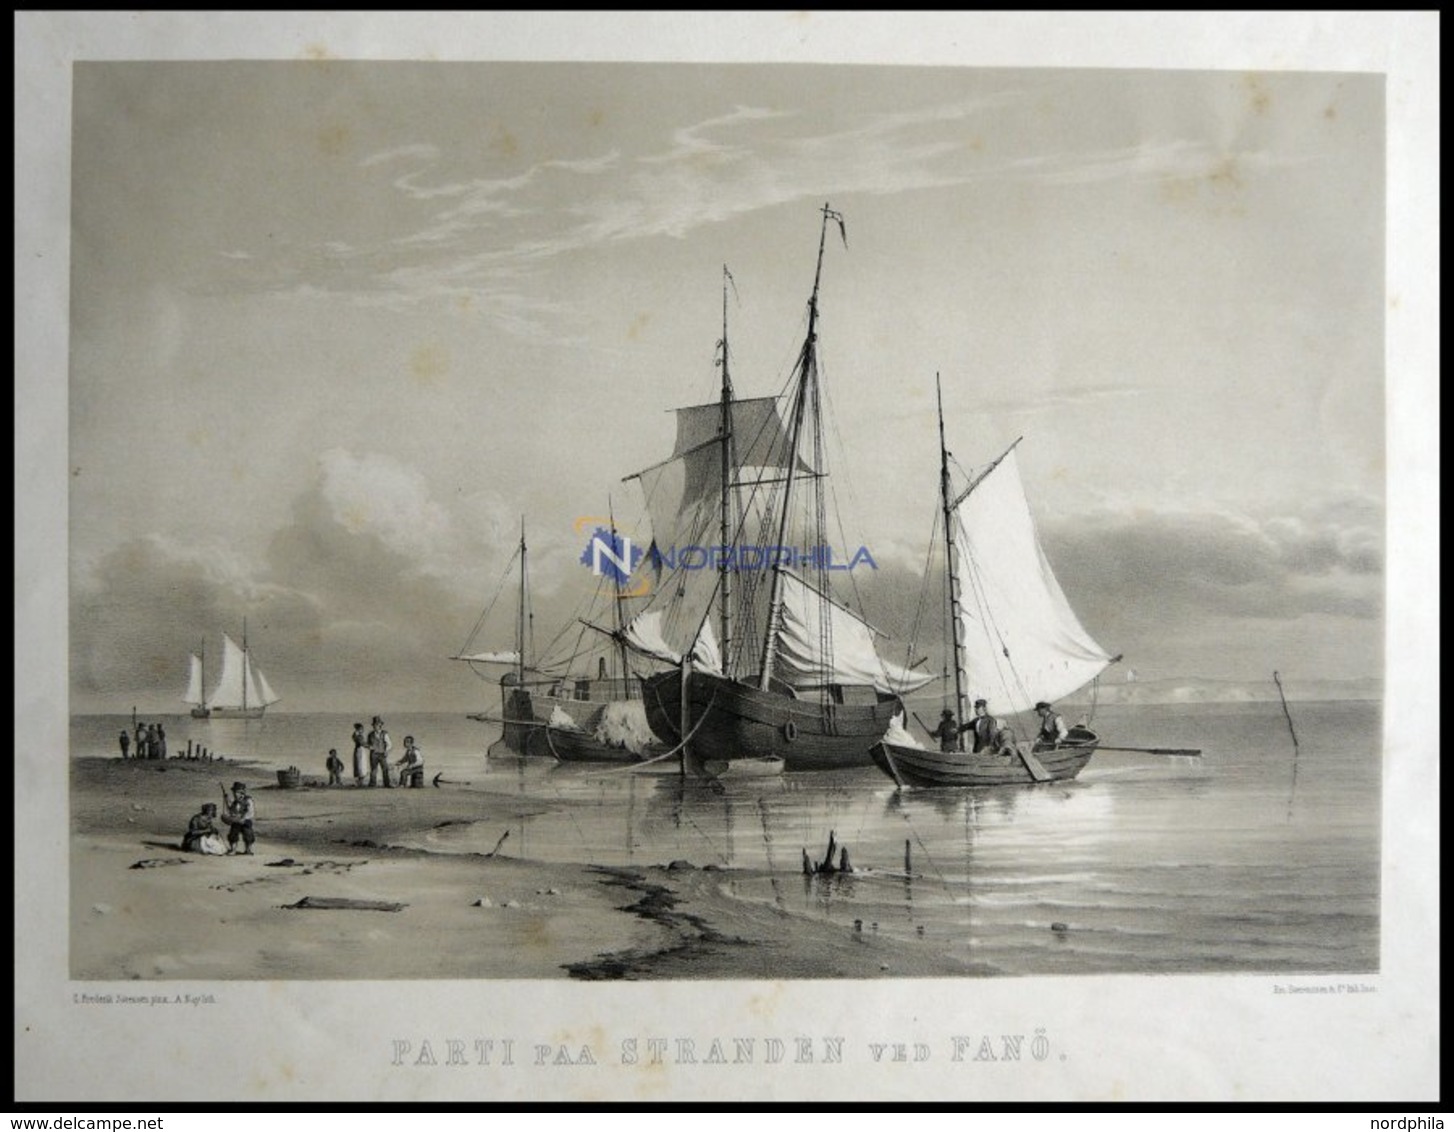 FANÖ (Parti Paa Stranden Ved Fanö), Strandszene Mit Schiffen, Lithographie Mit Tonplatte Von Alexander Nay Nach C. Frede - Litografia